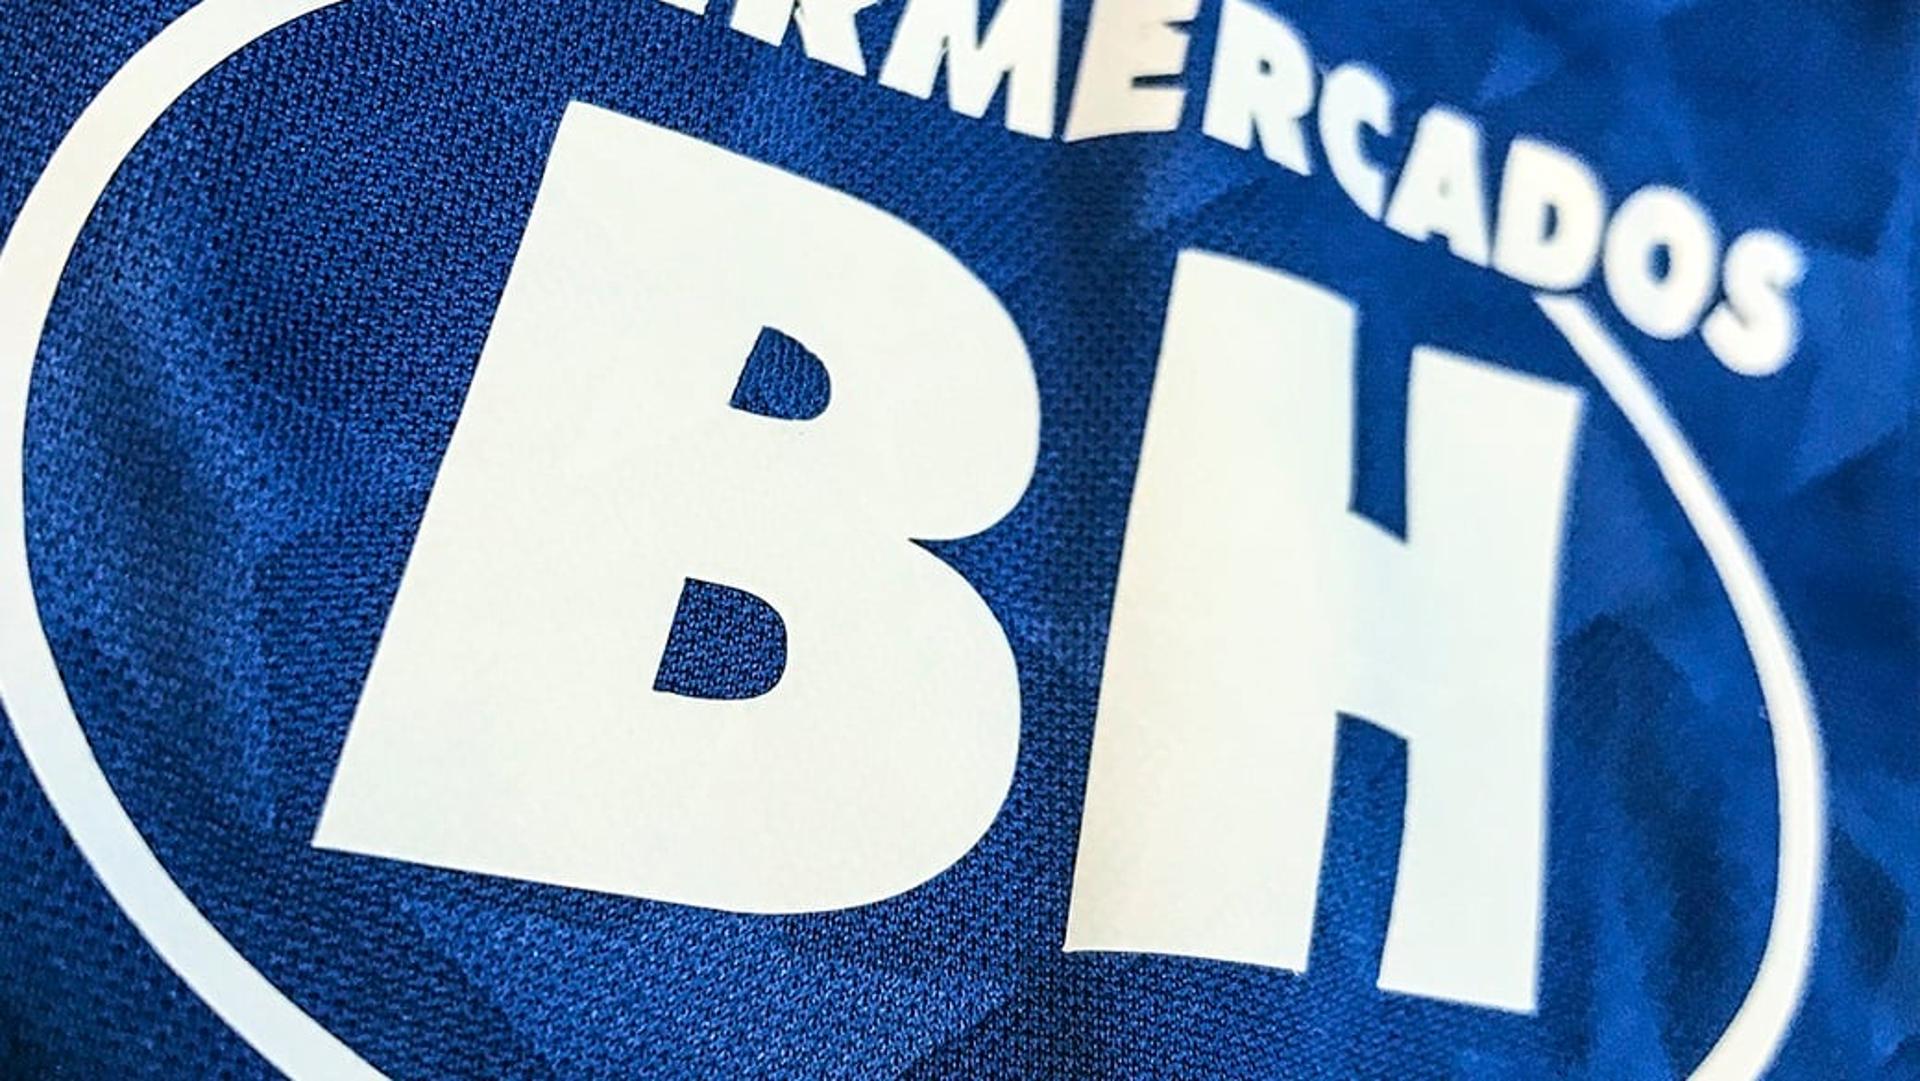 O Cruzeiro terá seu uniforme de 2019 totalmente alinhado com as cores do clube